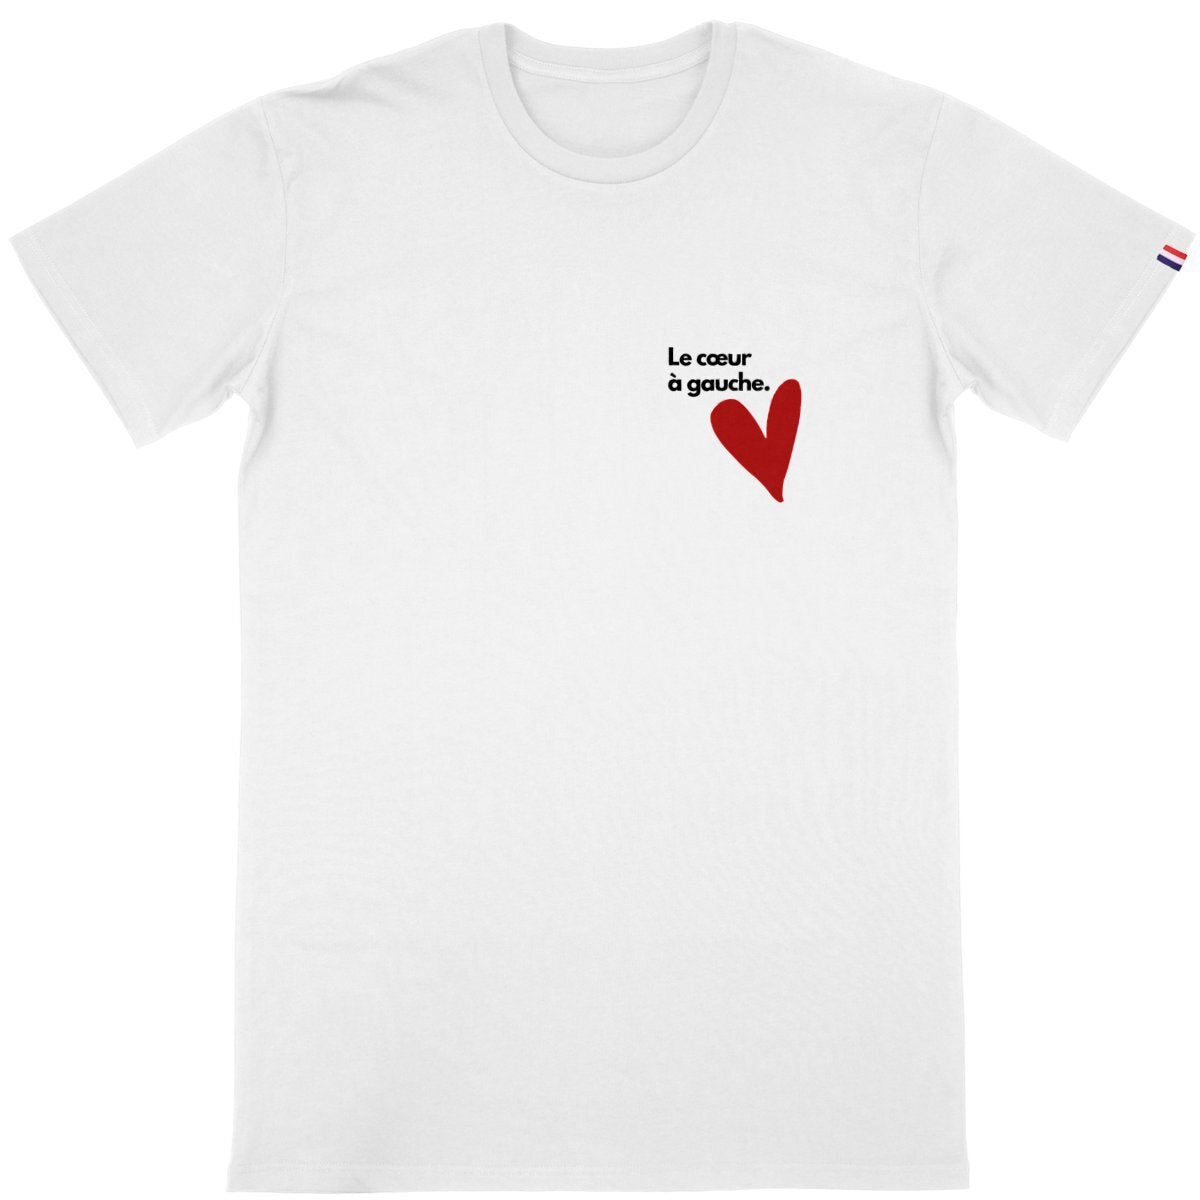 T-shirt Homme Made in France 100% Coton Bio Le cœur à gauche